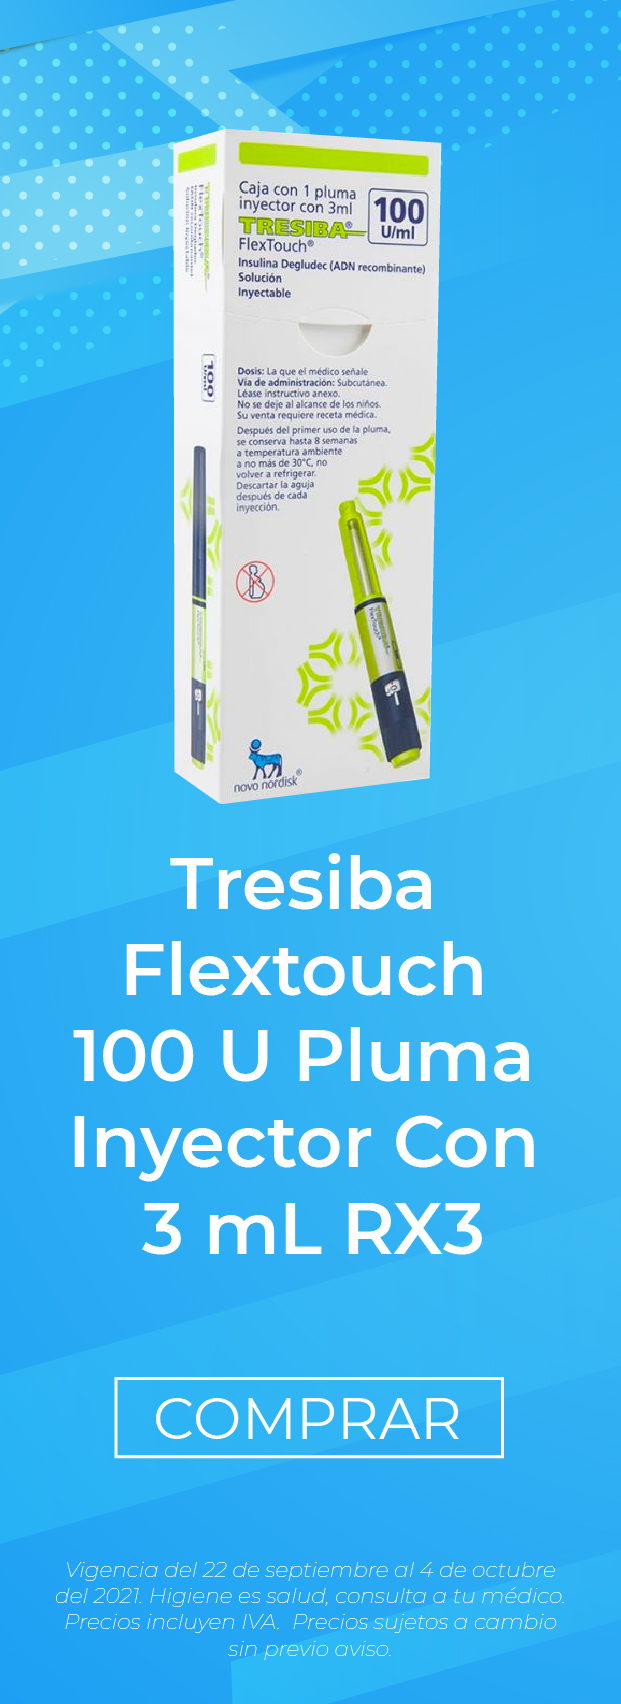 Tresiba Flextouch 100 U al mejor precio